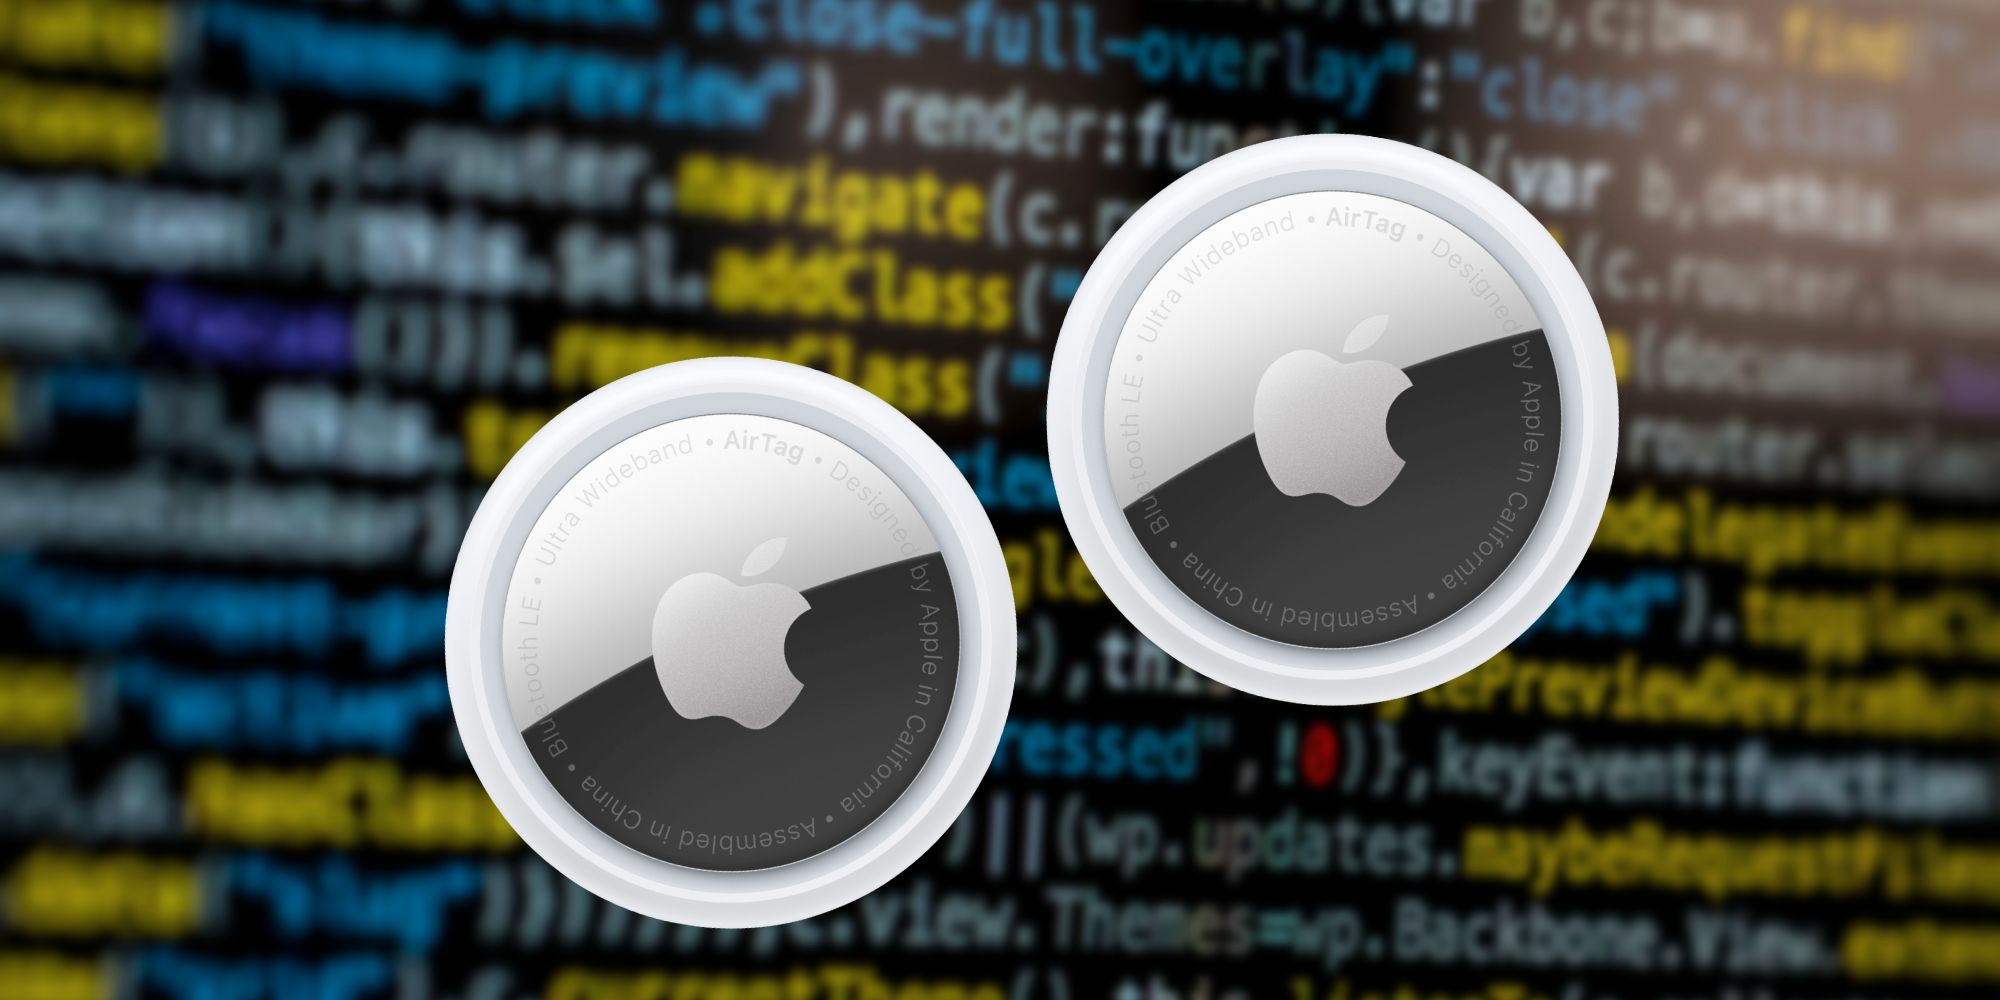 Apple AirTag pirateado: ¿Qué nos dice y los usuarios deberían estar preocupados?